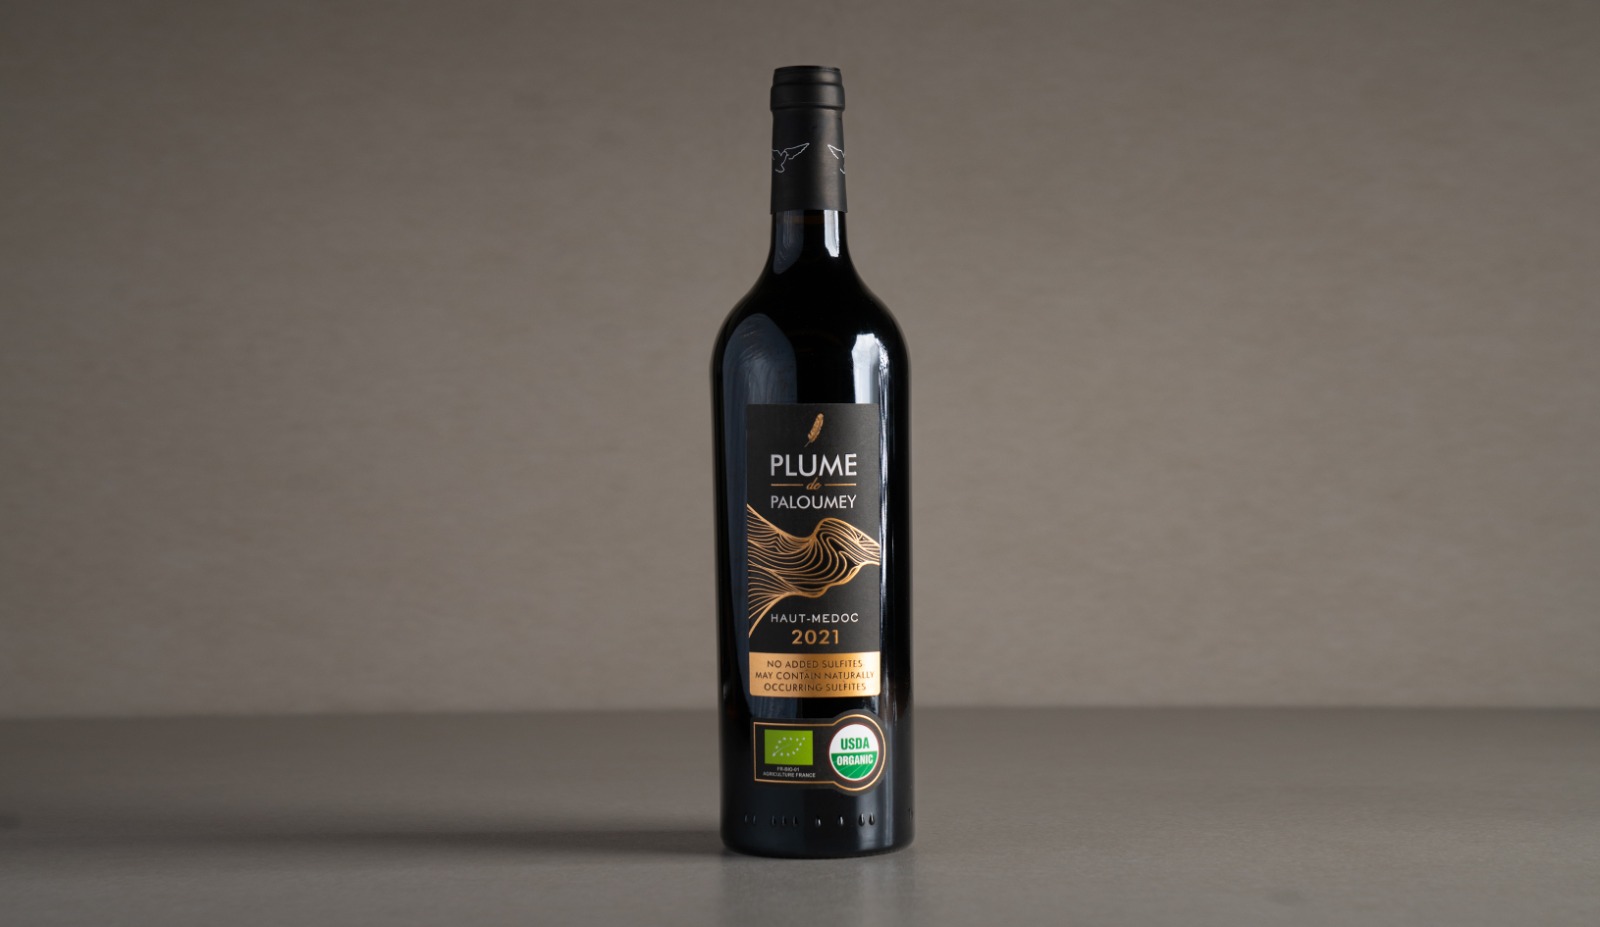 יין אדום יבש "פלומי דה פלומיי" ללא ביסולפיט 2021